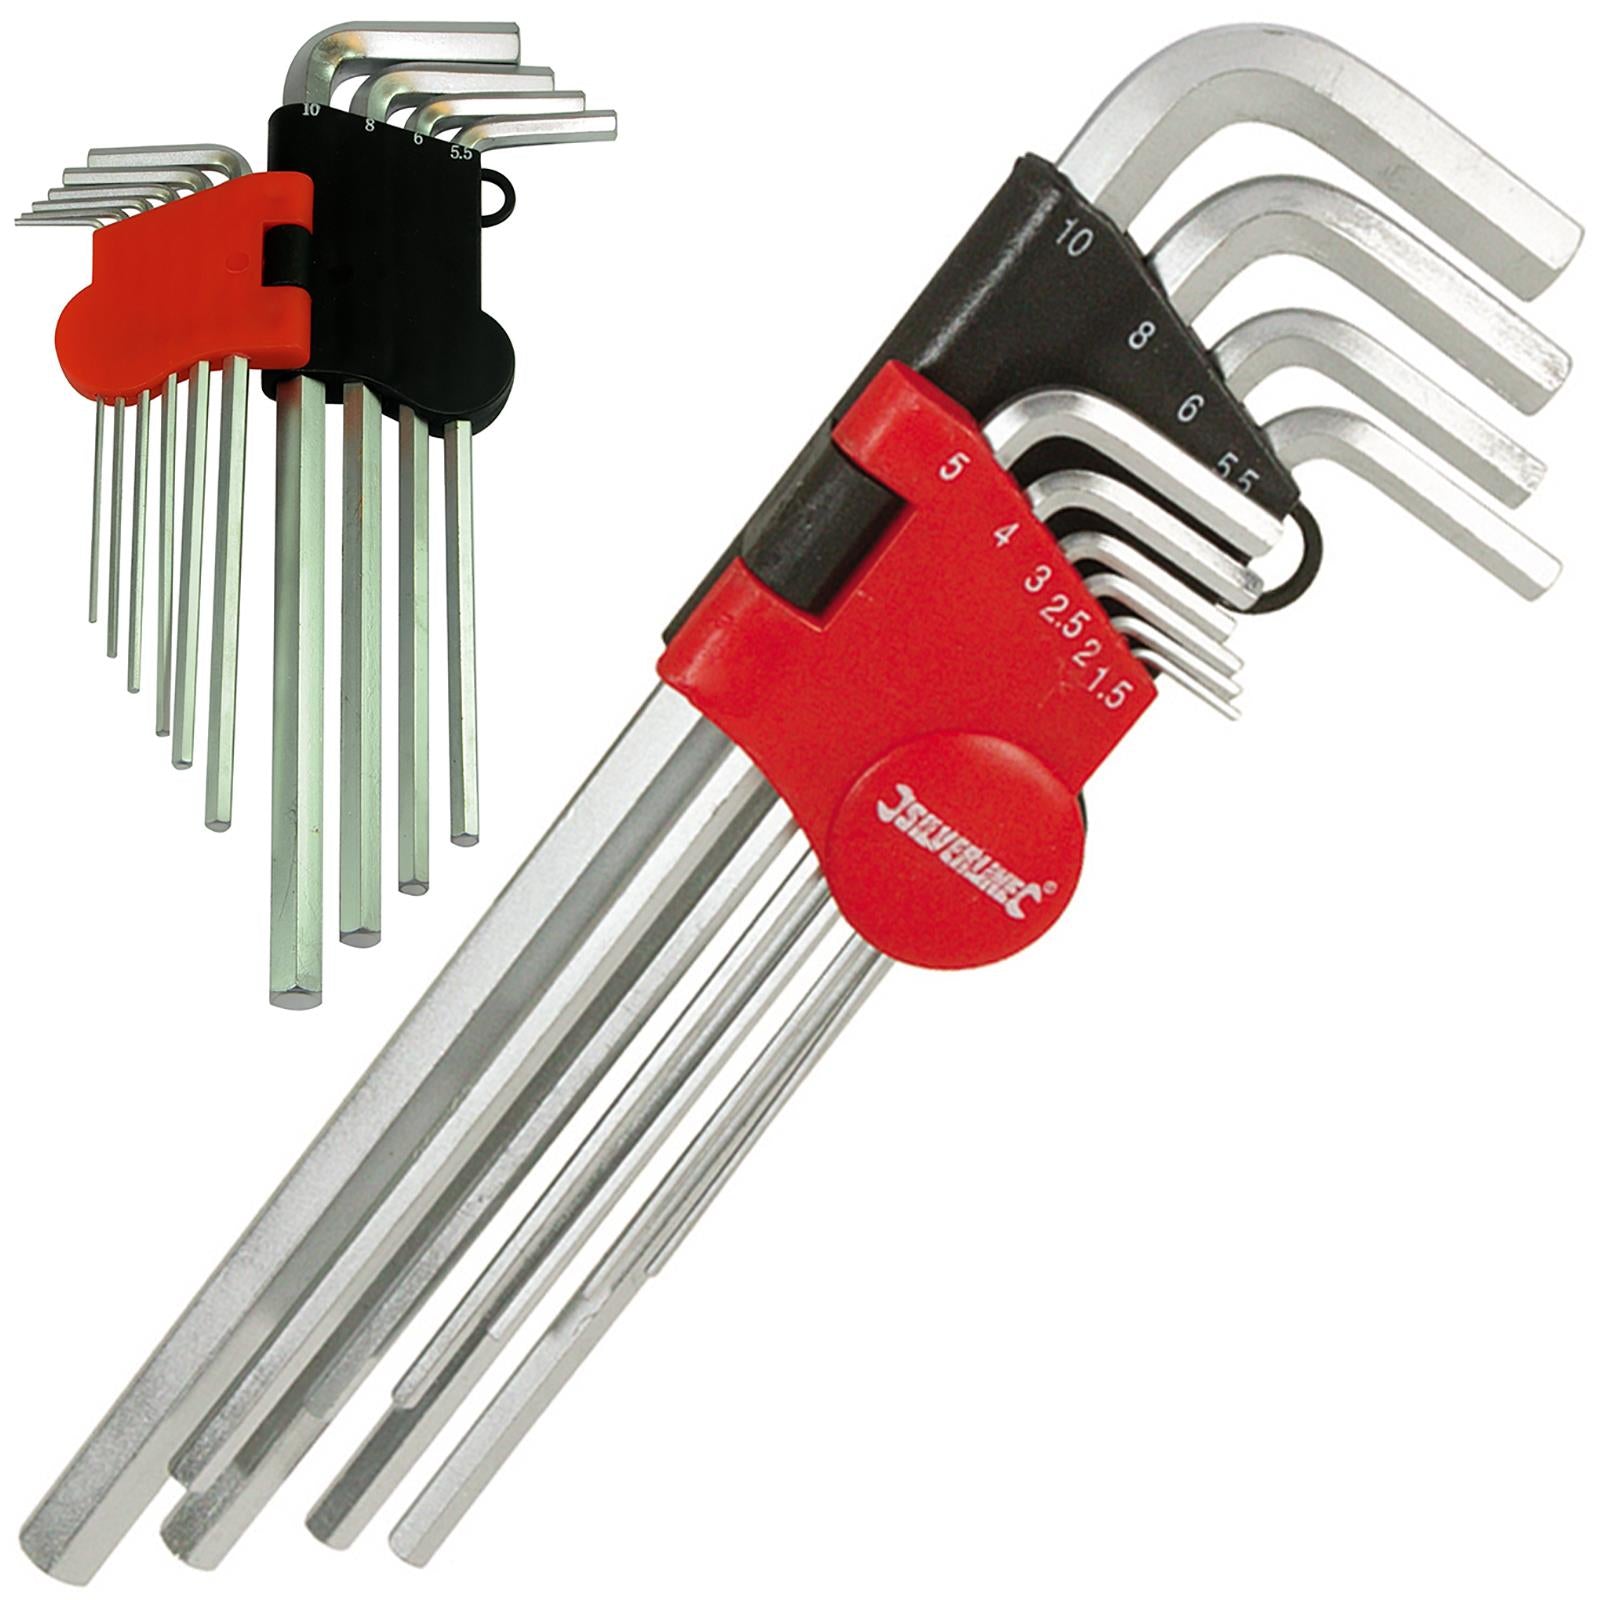 Silverline 10 Piece Hex Key Set Metric 1.5mm - 10mm Expert Steel Socket Wrench